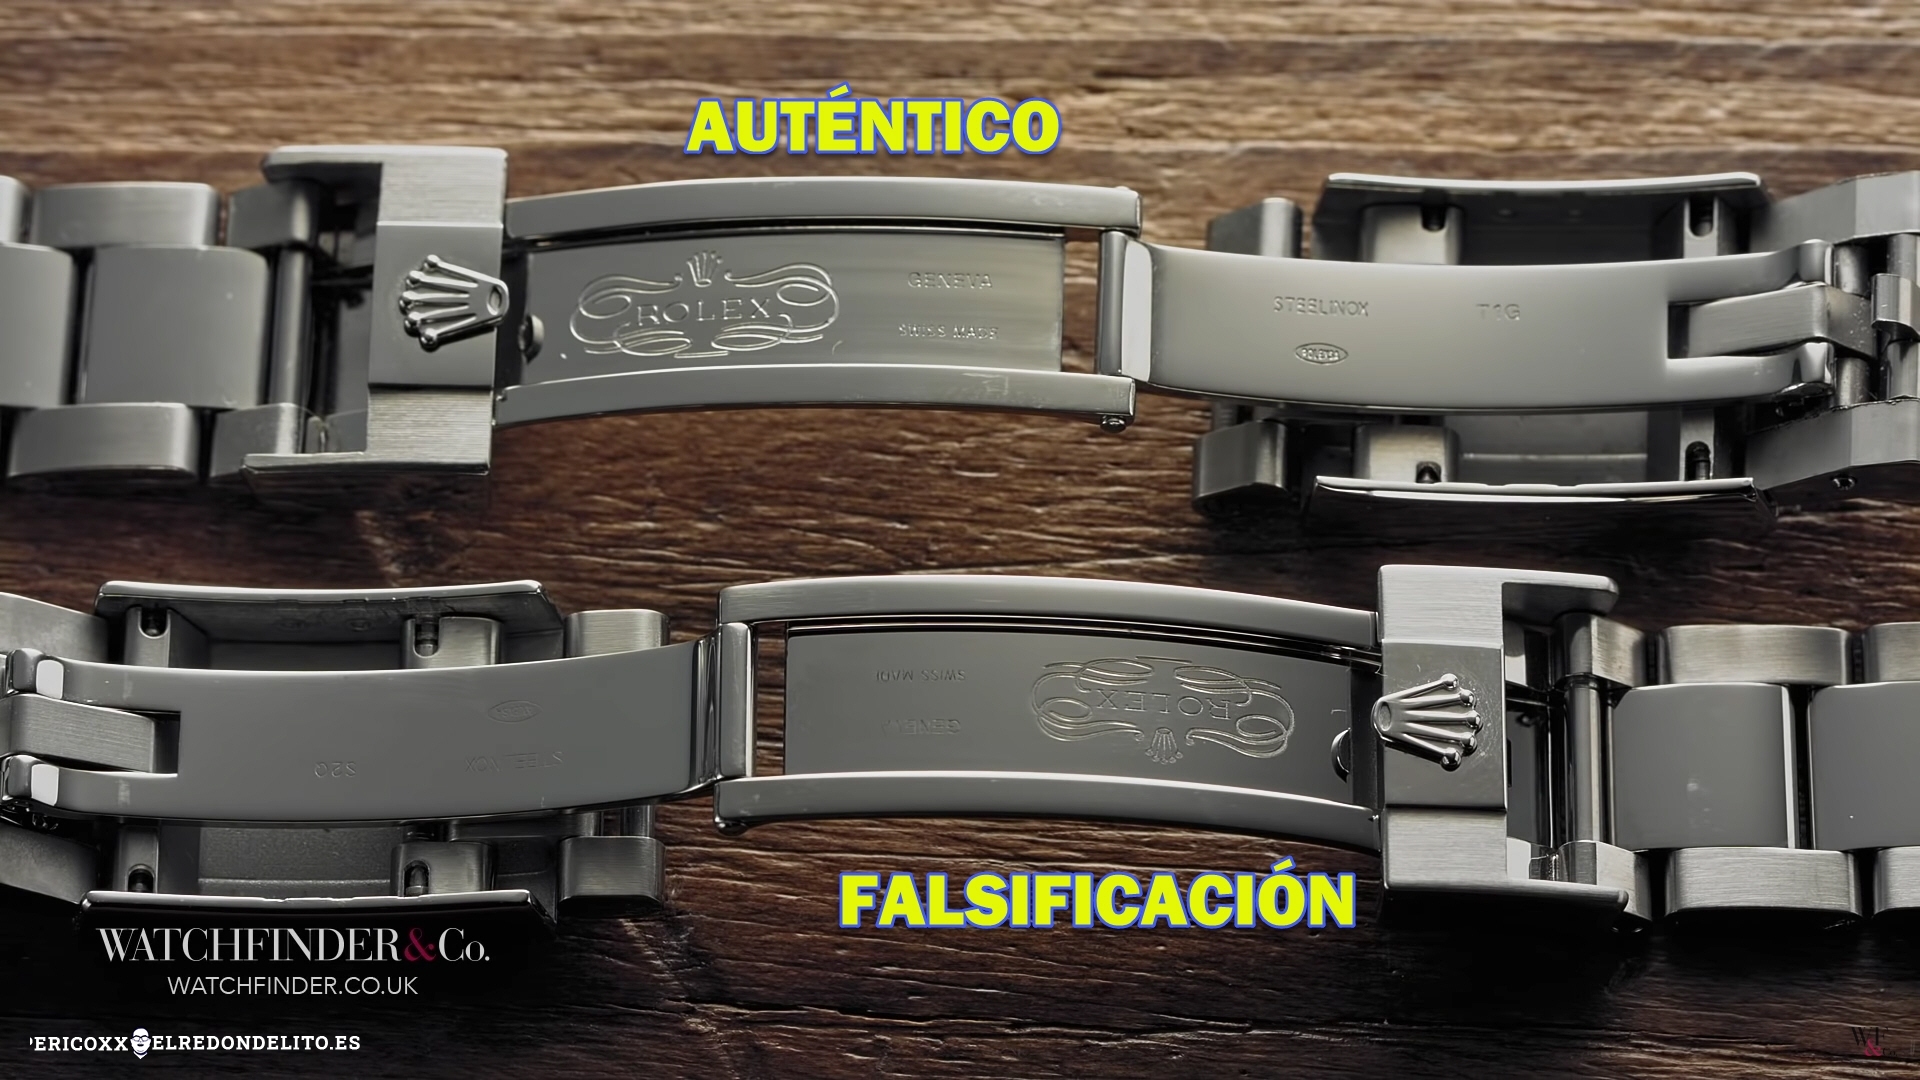 rolex_autentico_vs_falsificacion_elredondelito.es_012